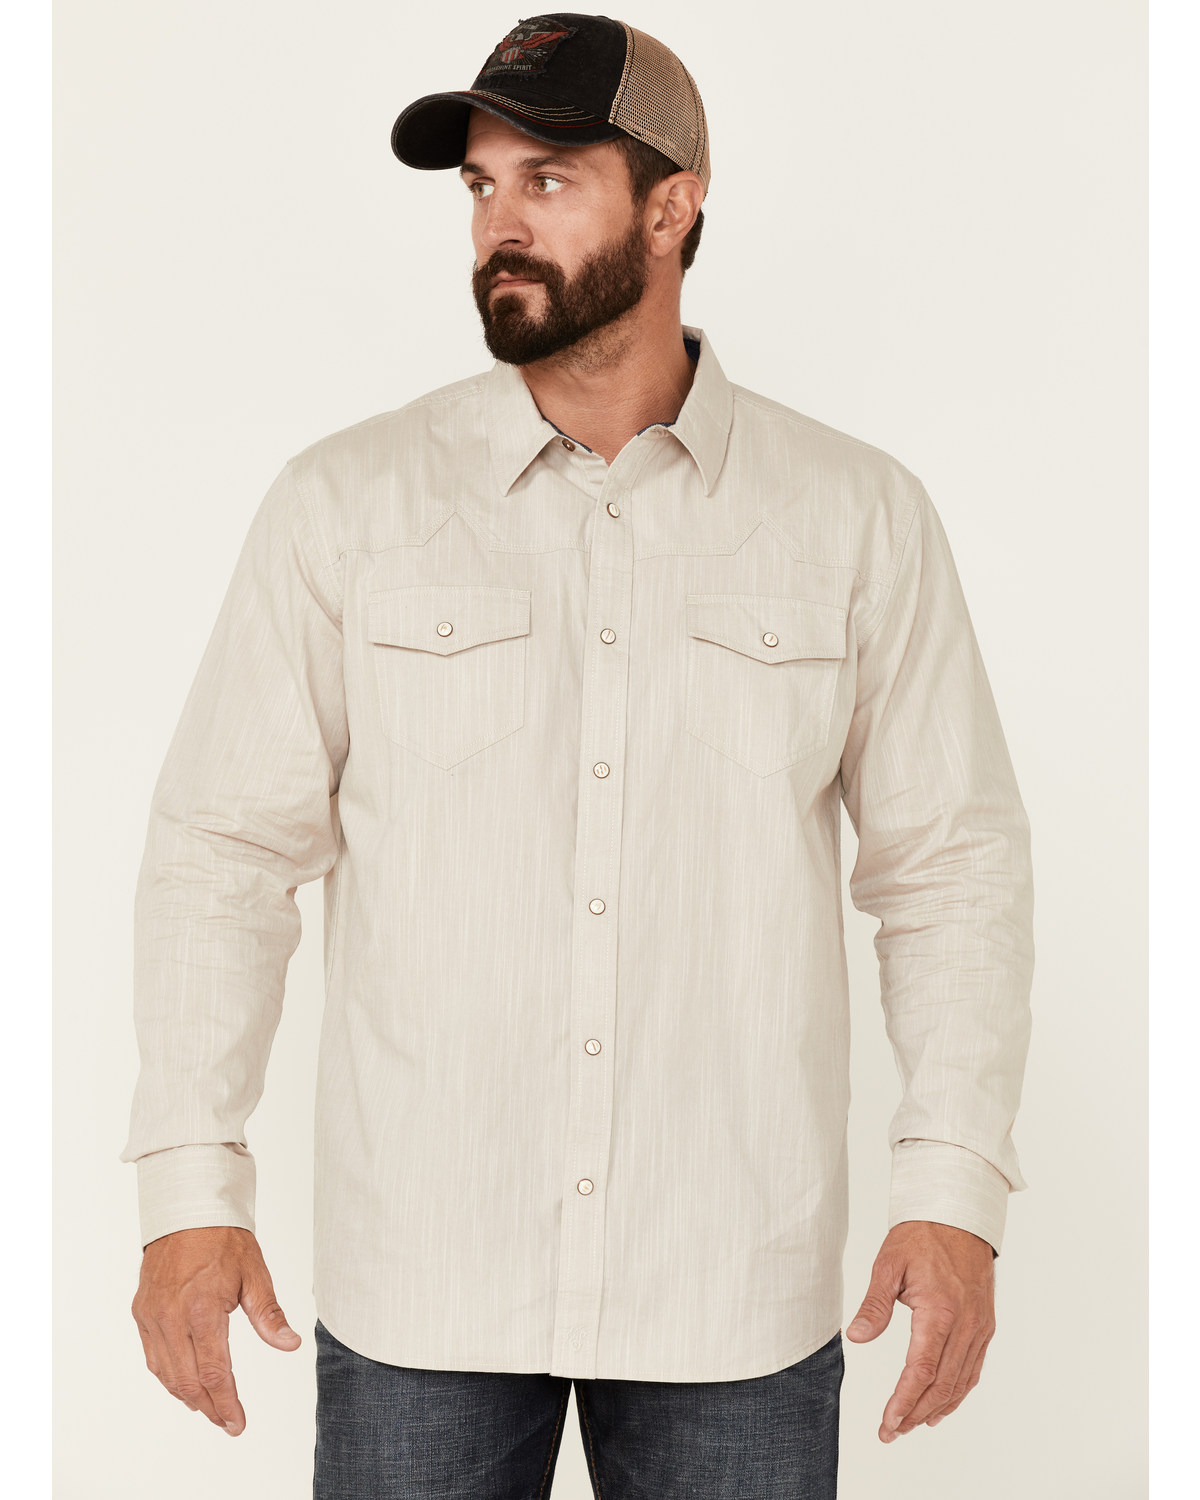 Moonshine Spirit Men's Solid Tan Ironwood Long Sleeve Snap Western Shirt